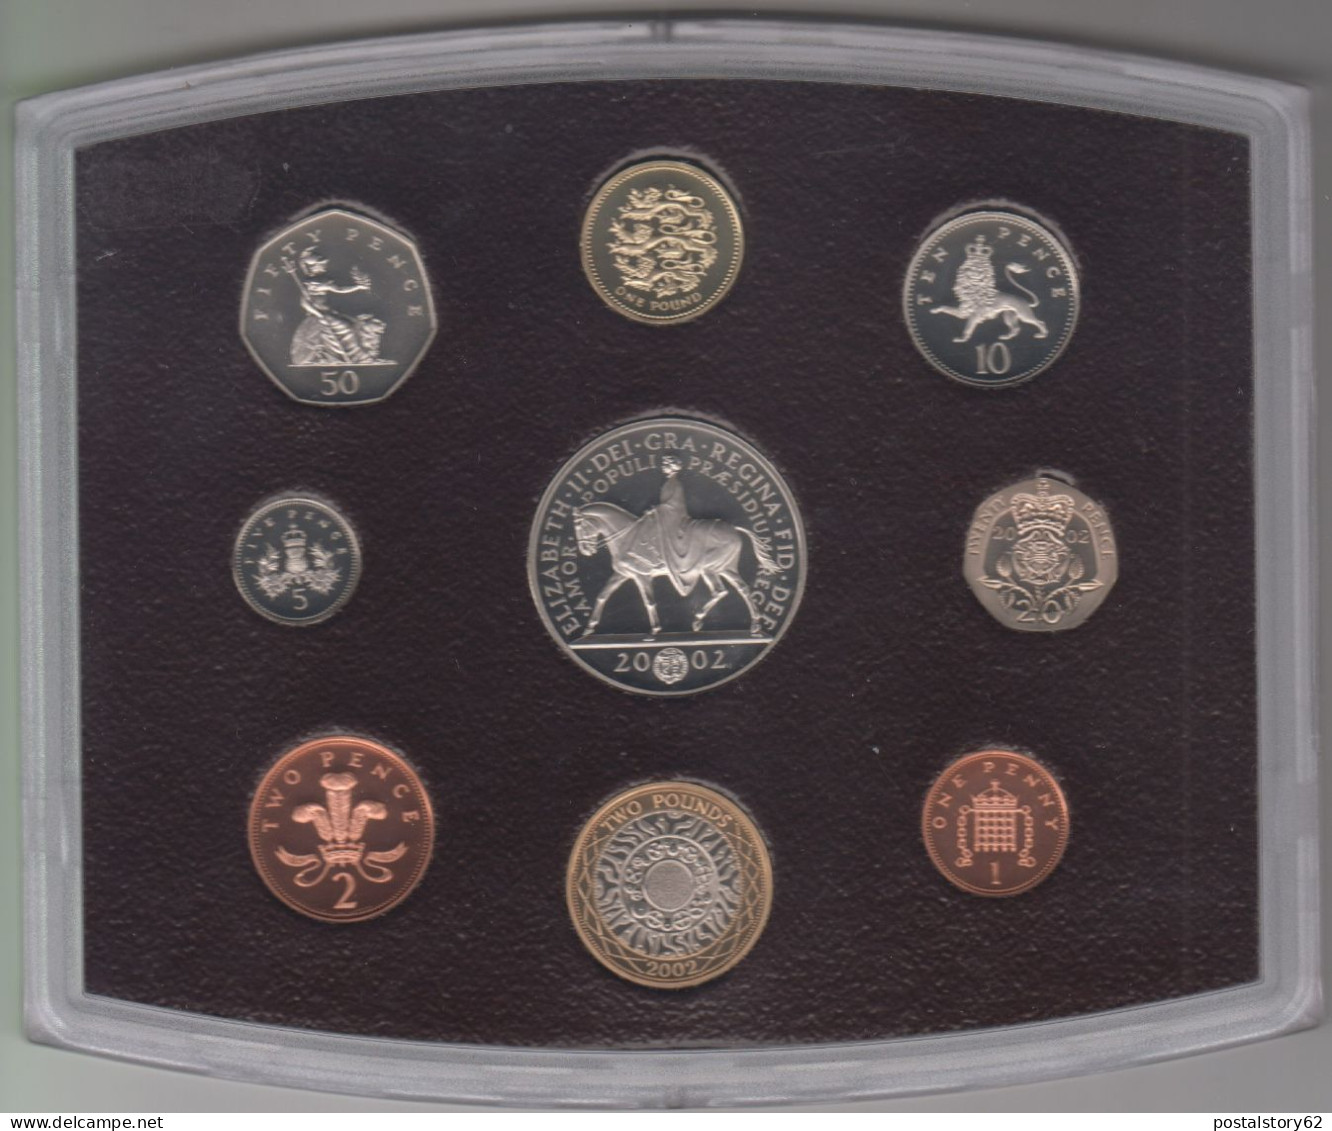 Gran Bretagna, United Kingdom Proof Collection - Serie Completa Ufficiale In Confezione Integra 2002 - Maundy Sets  & Conmemorativas